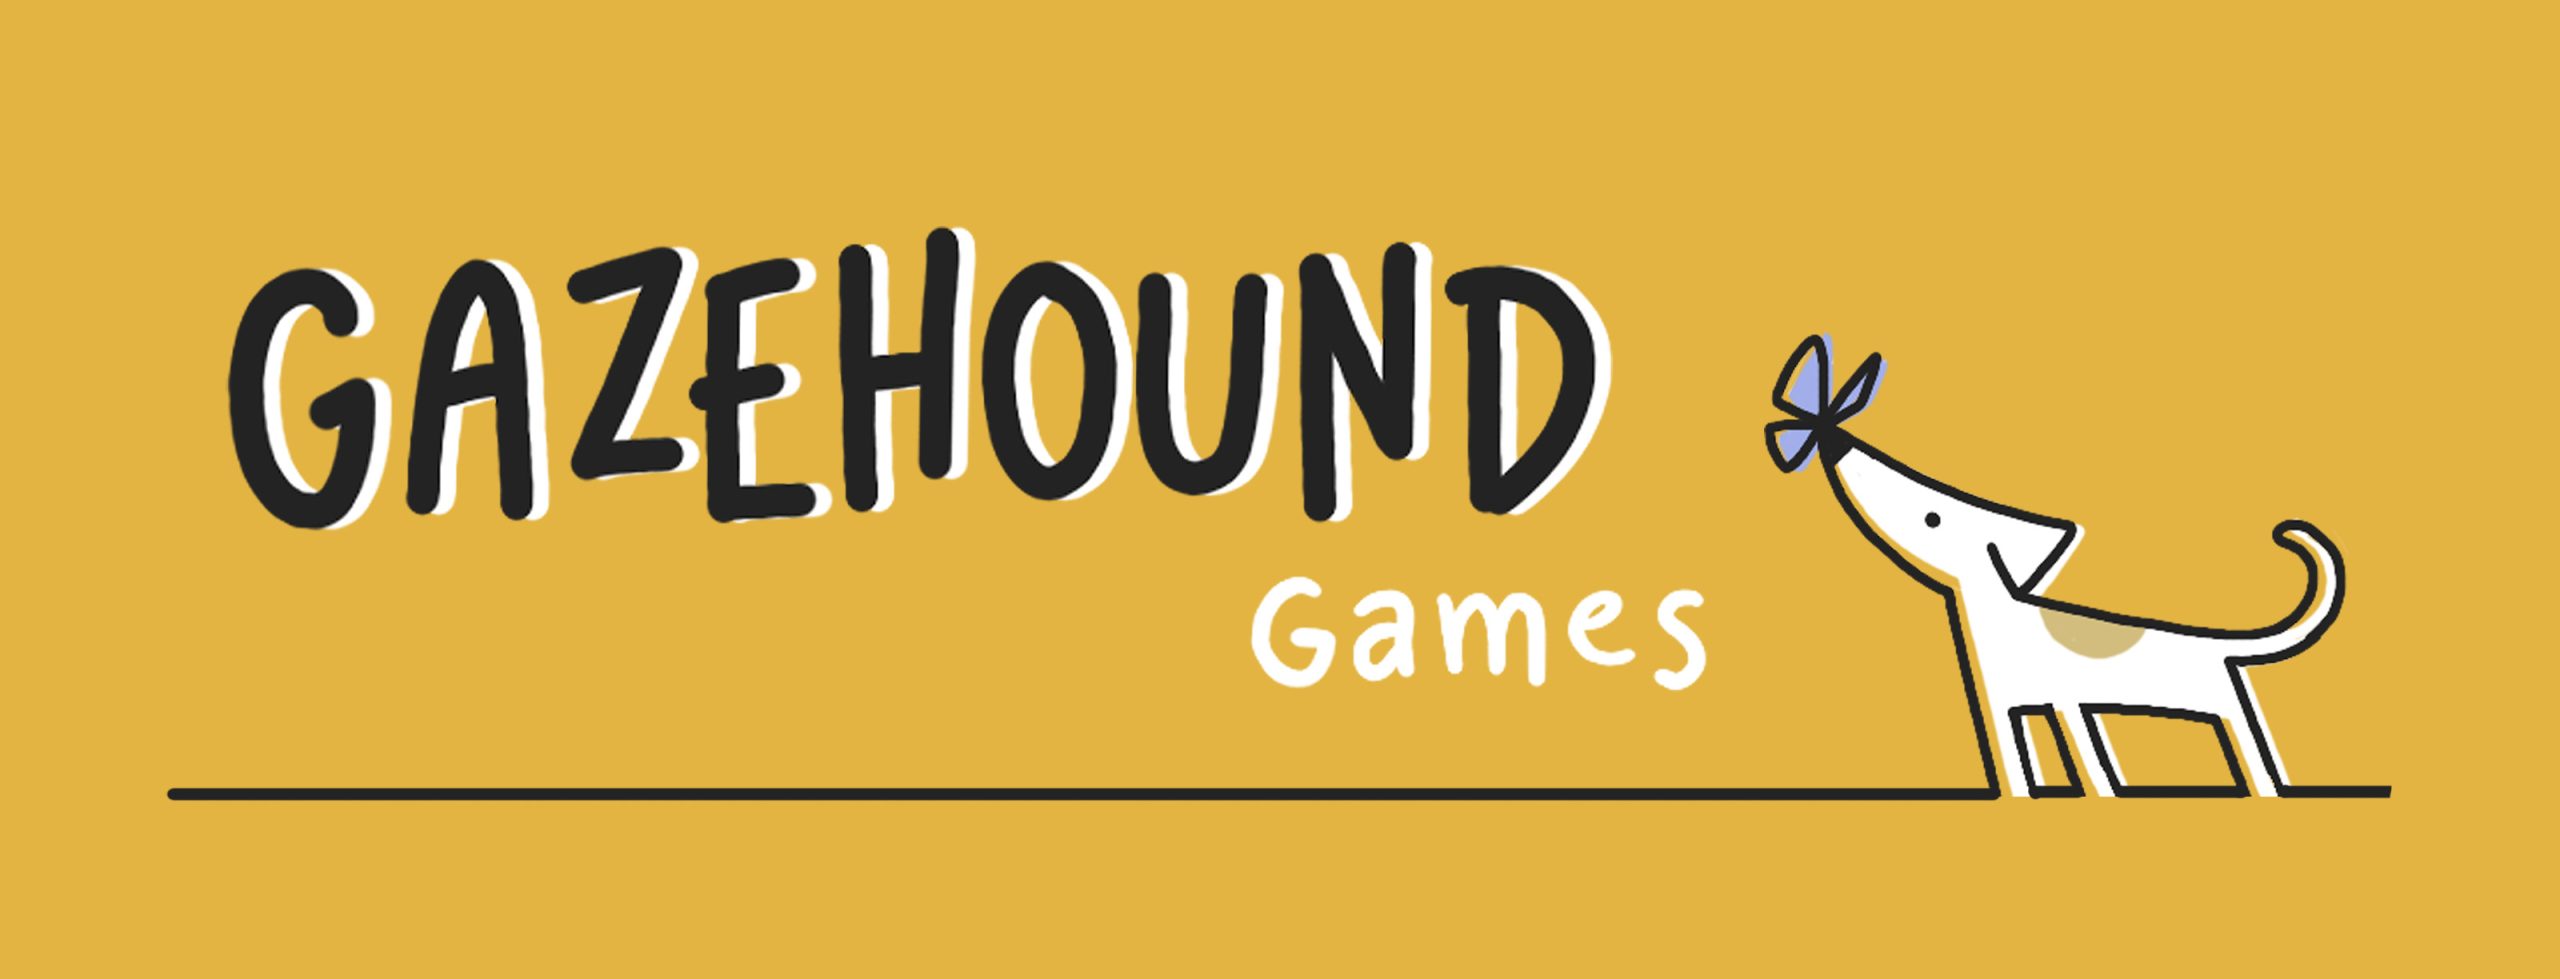 Gazehound Games